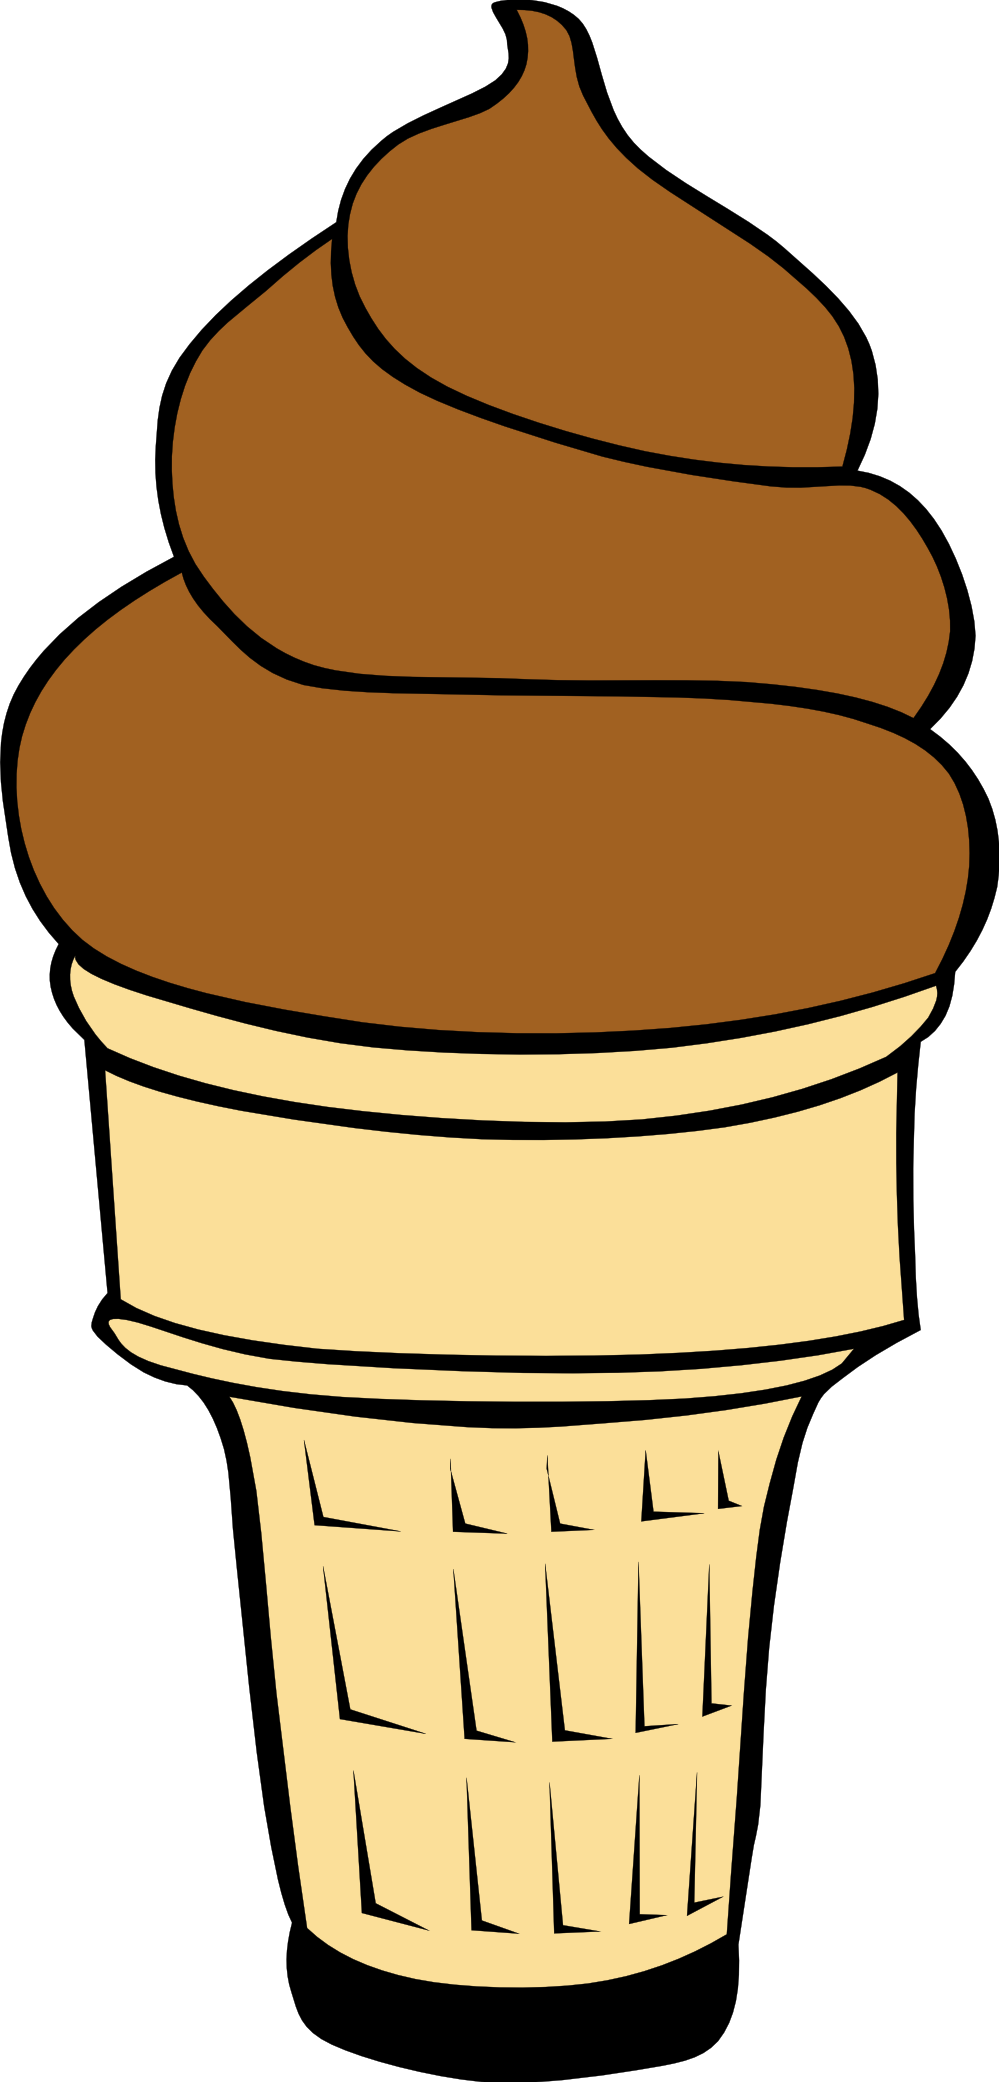 Ice cream cone ice creamne cl